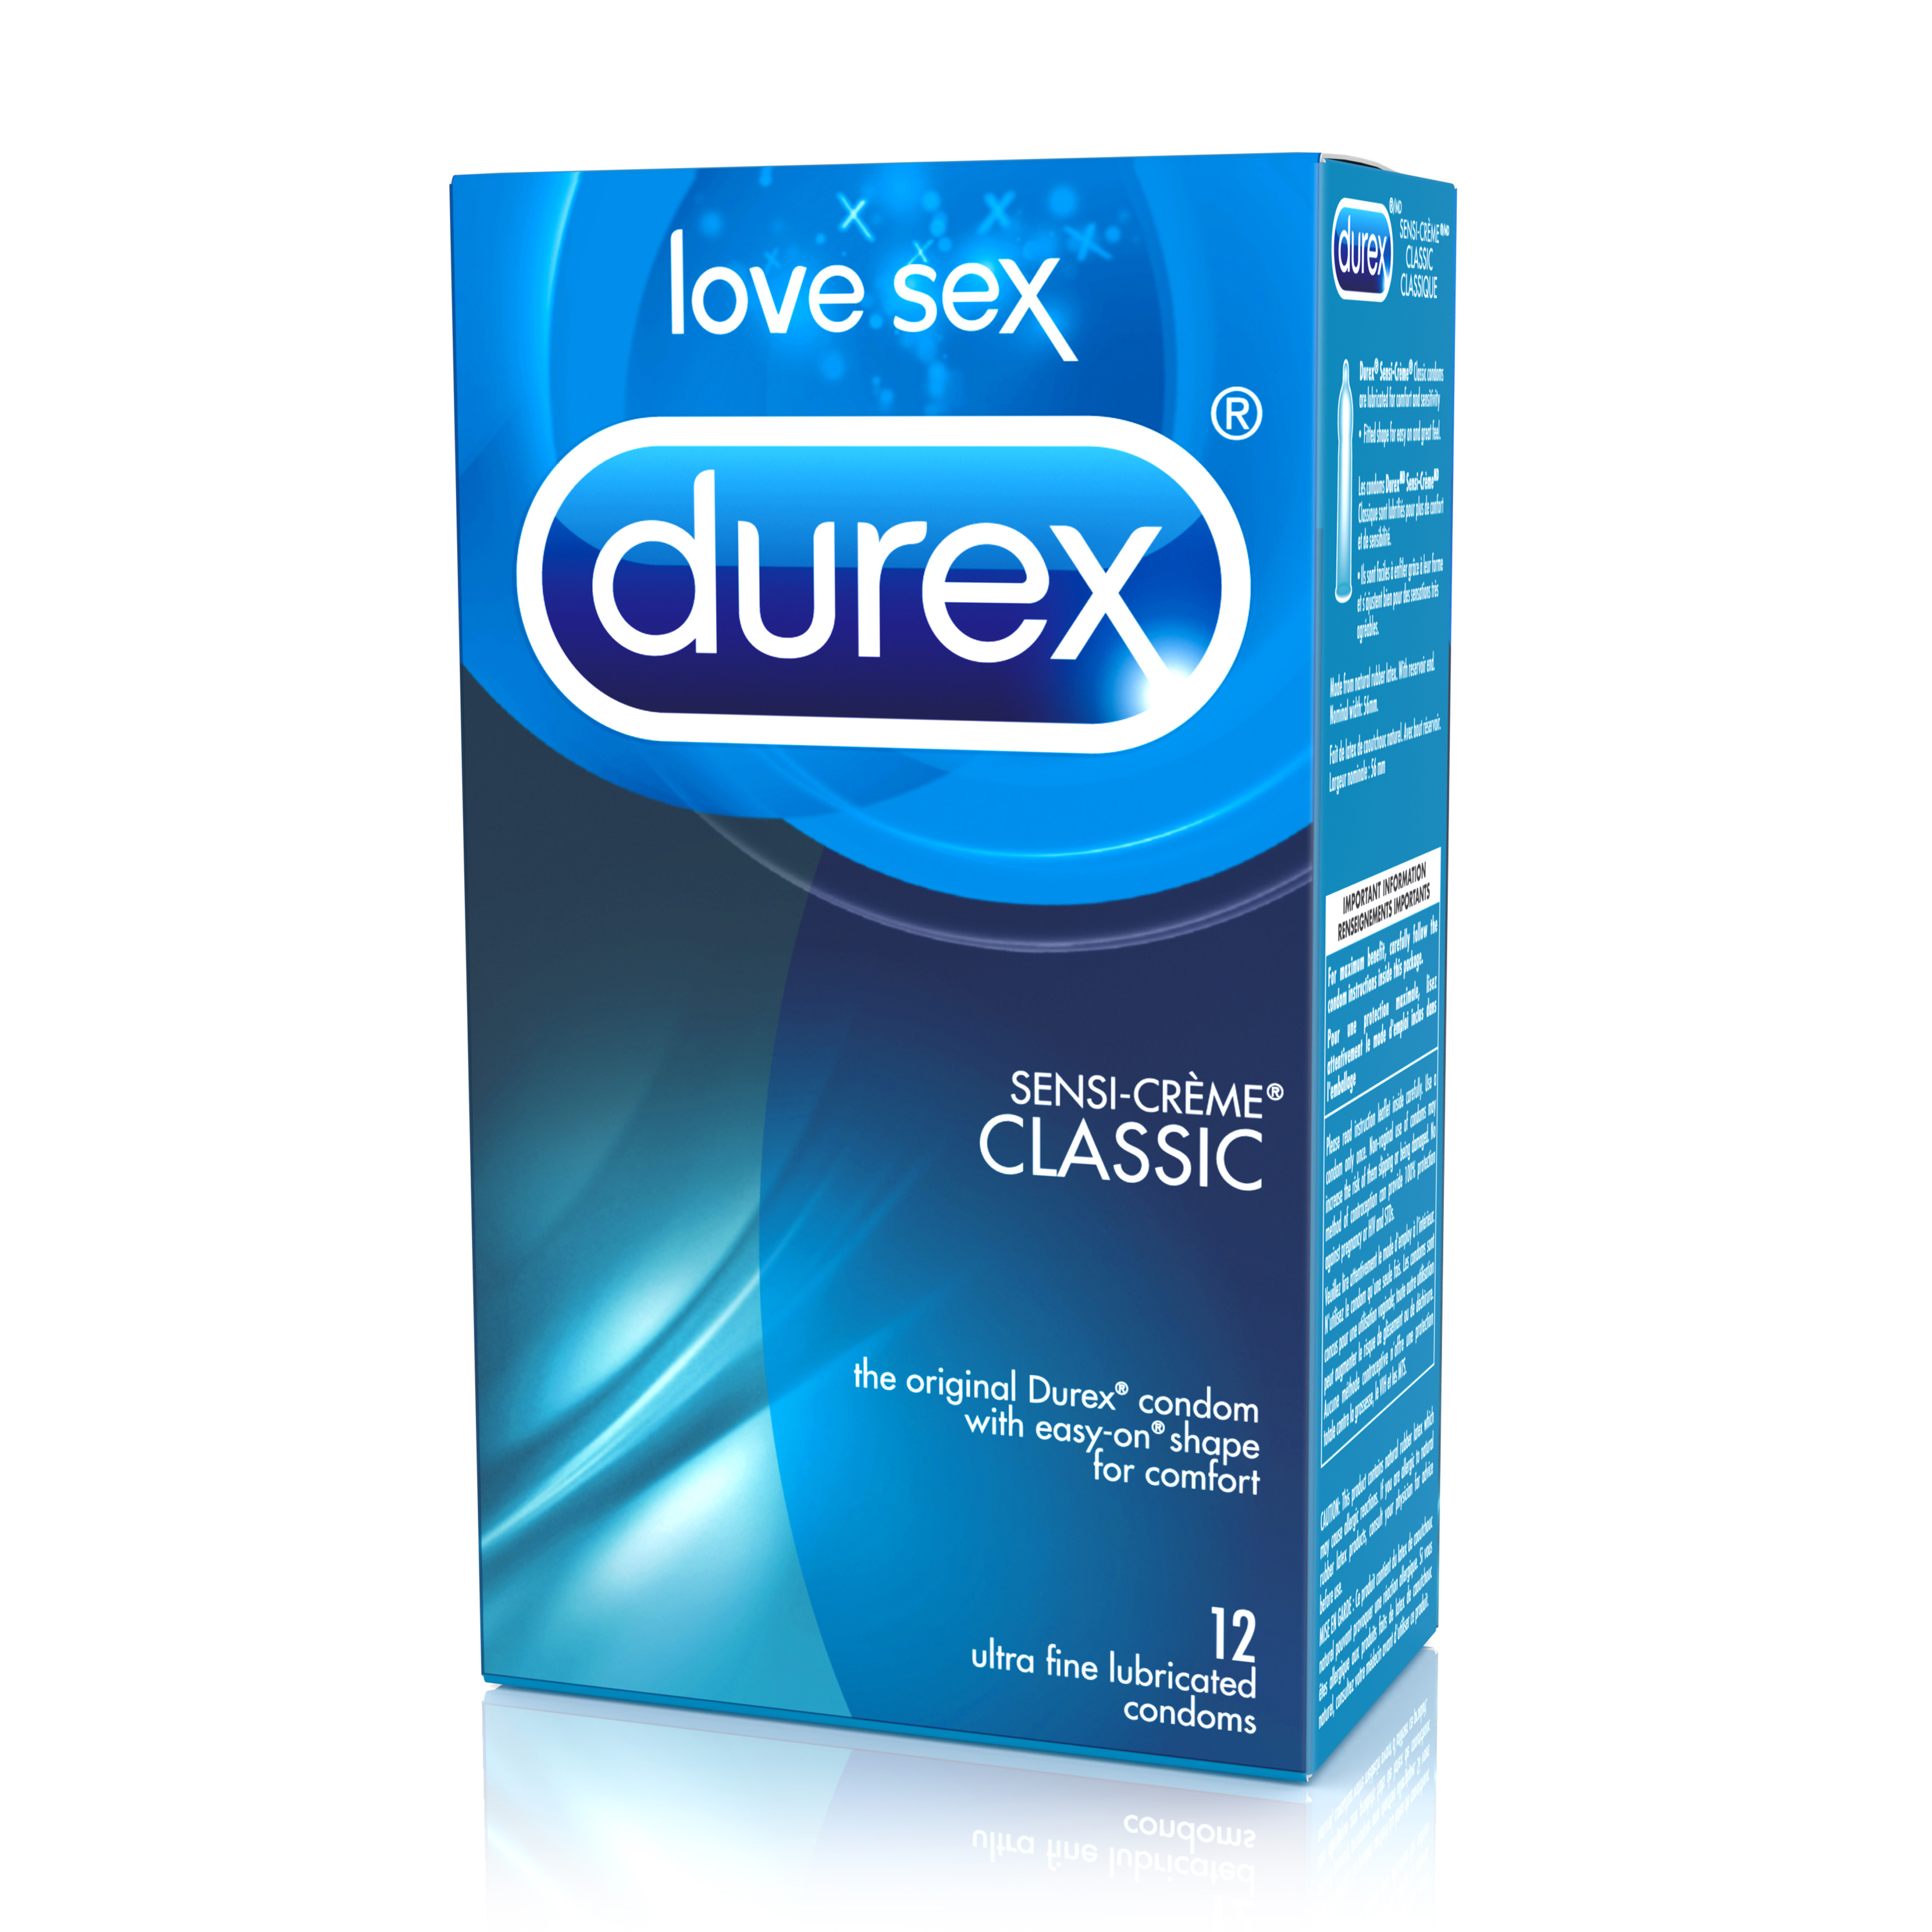 DUREX SensiCrme Lubricated Condoms Canada